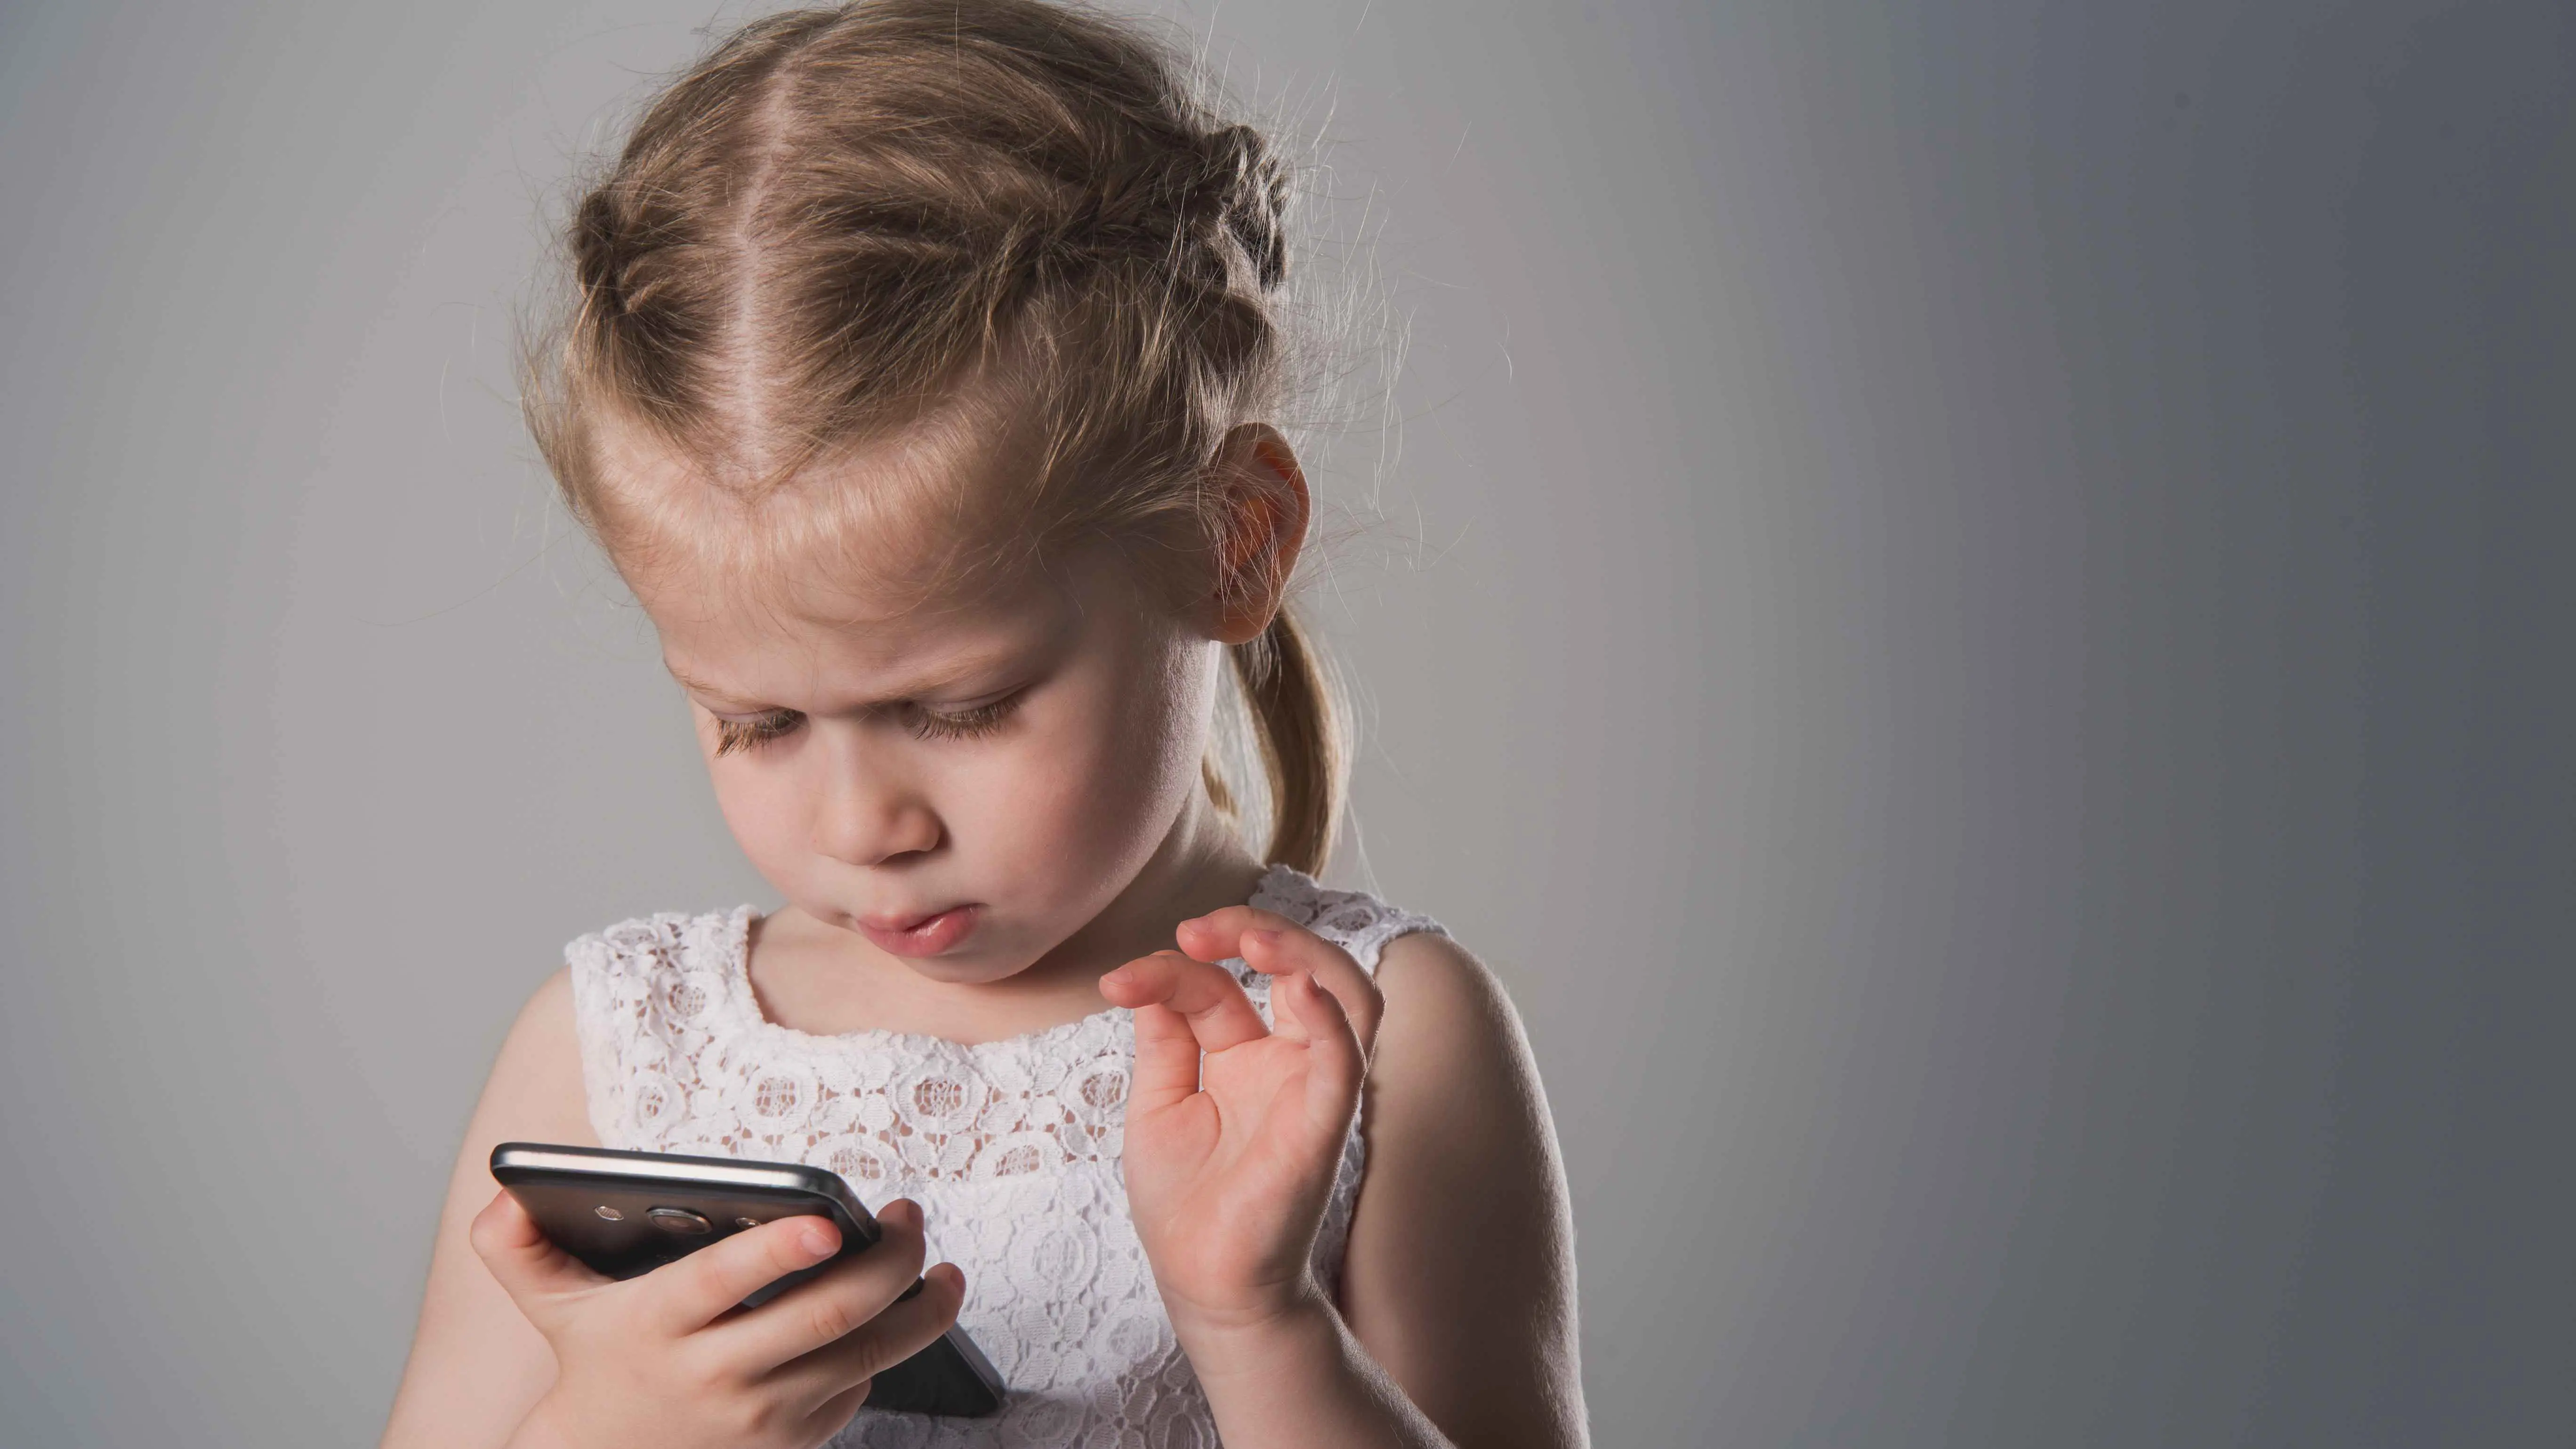 تحذير من استخدام الهواتف واللوحيات لتهدئة غضب الأطفال